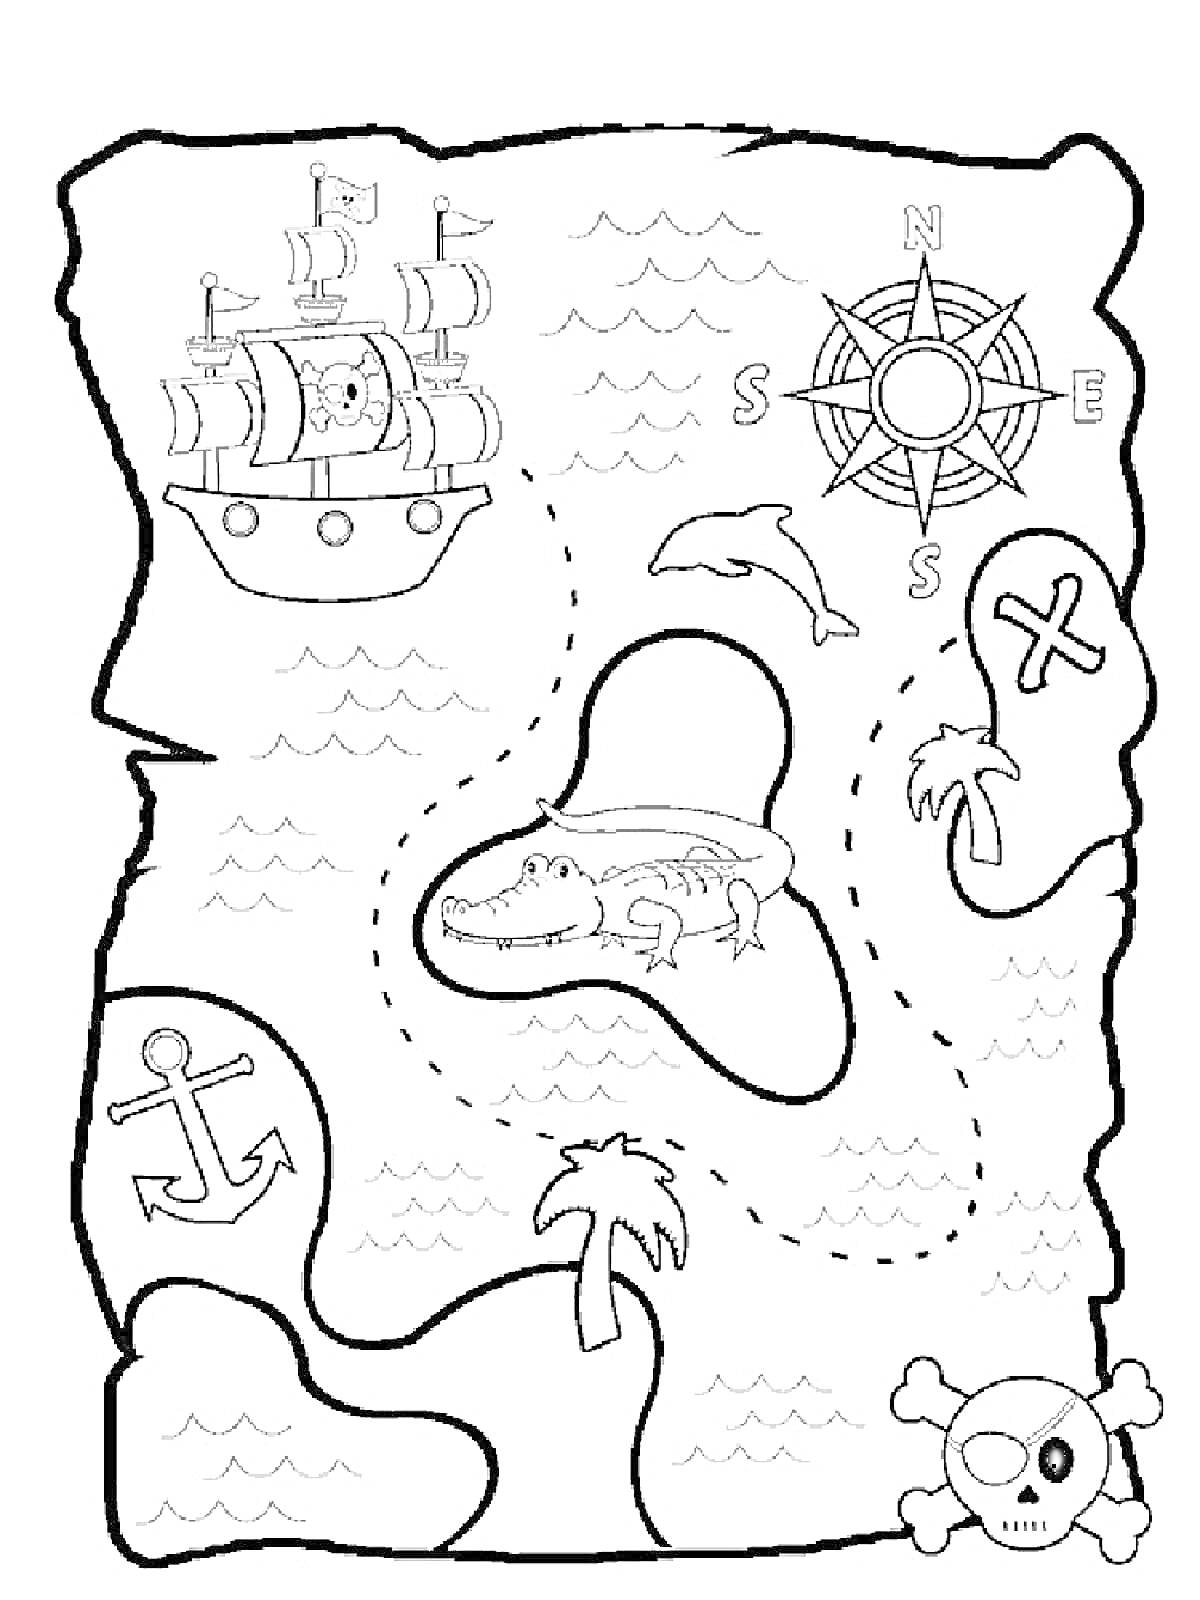 Раскраска Карта сокровищ с кораблем, компасом, дельфином, островом с аллигатором, крестом, черепом и костями, якорем, пальмами и волнами